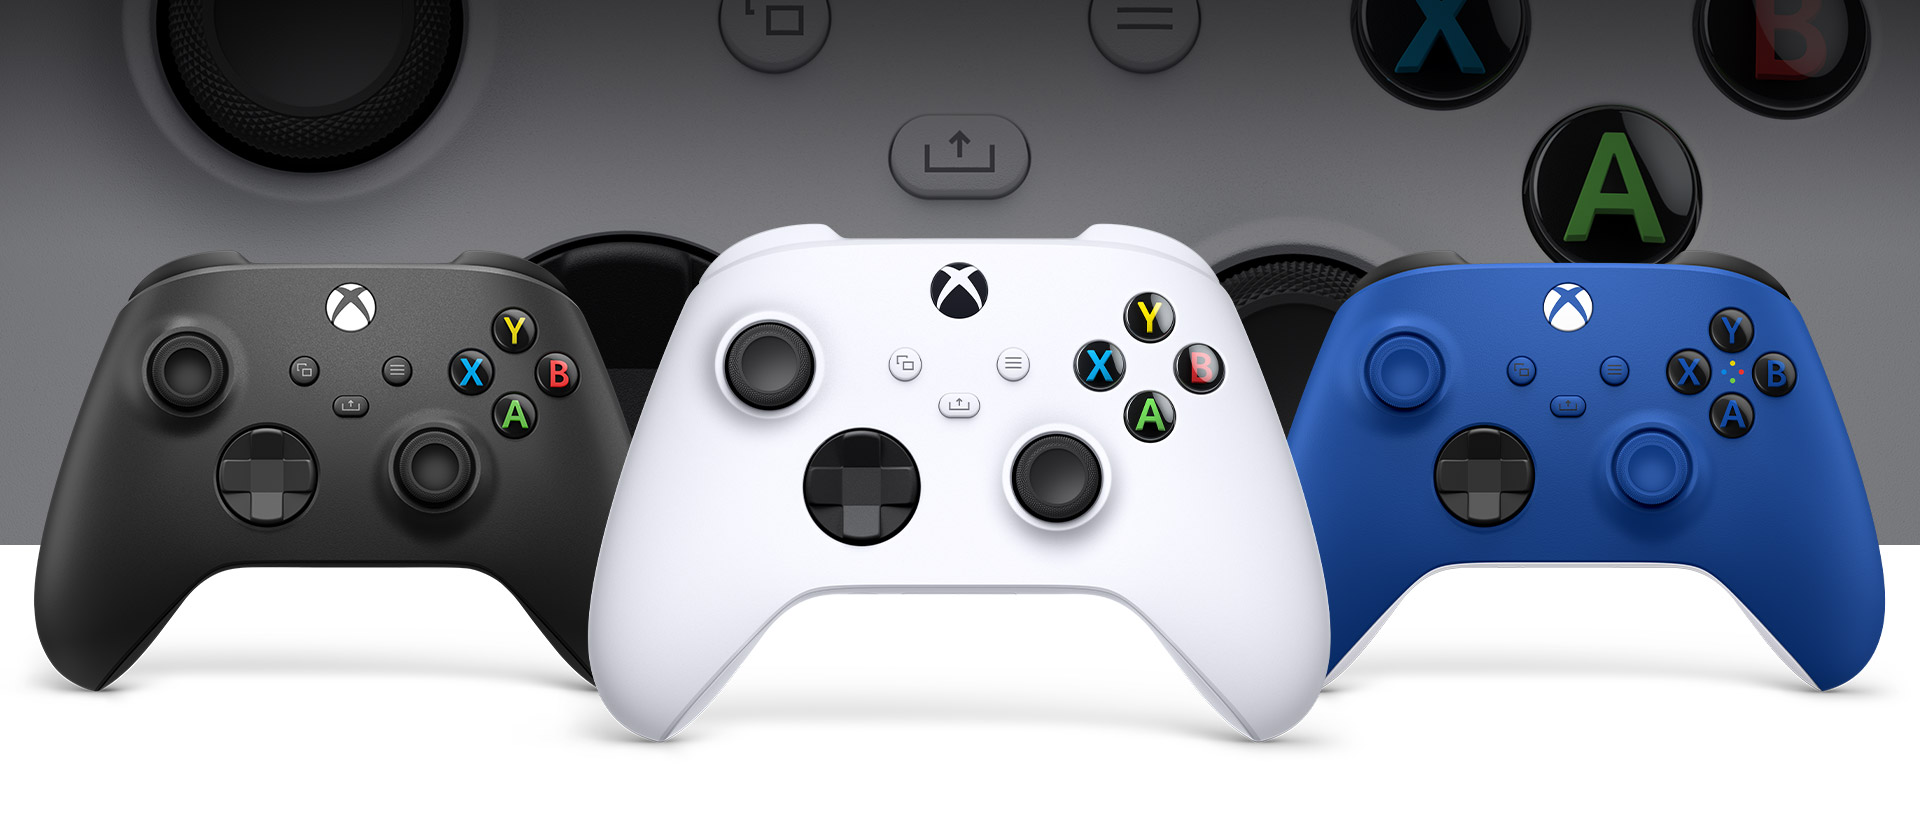 Acessorios-Xbox Xbox começa a banir acessórios não oficiais 